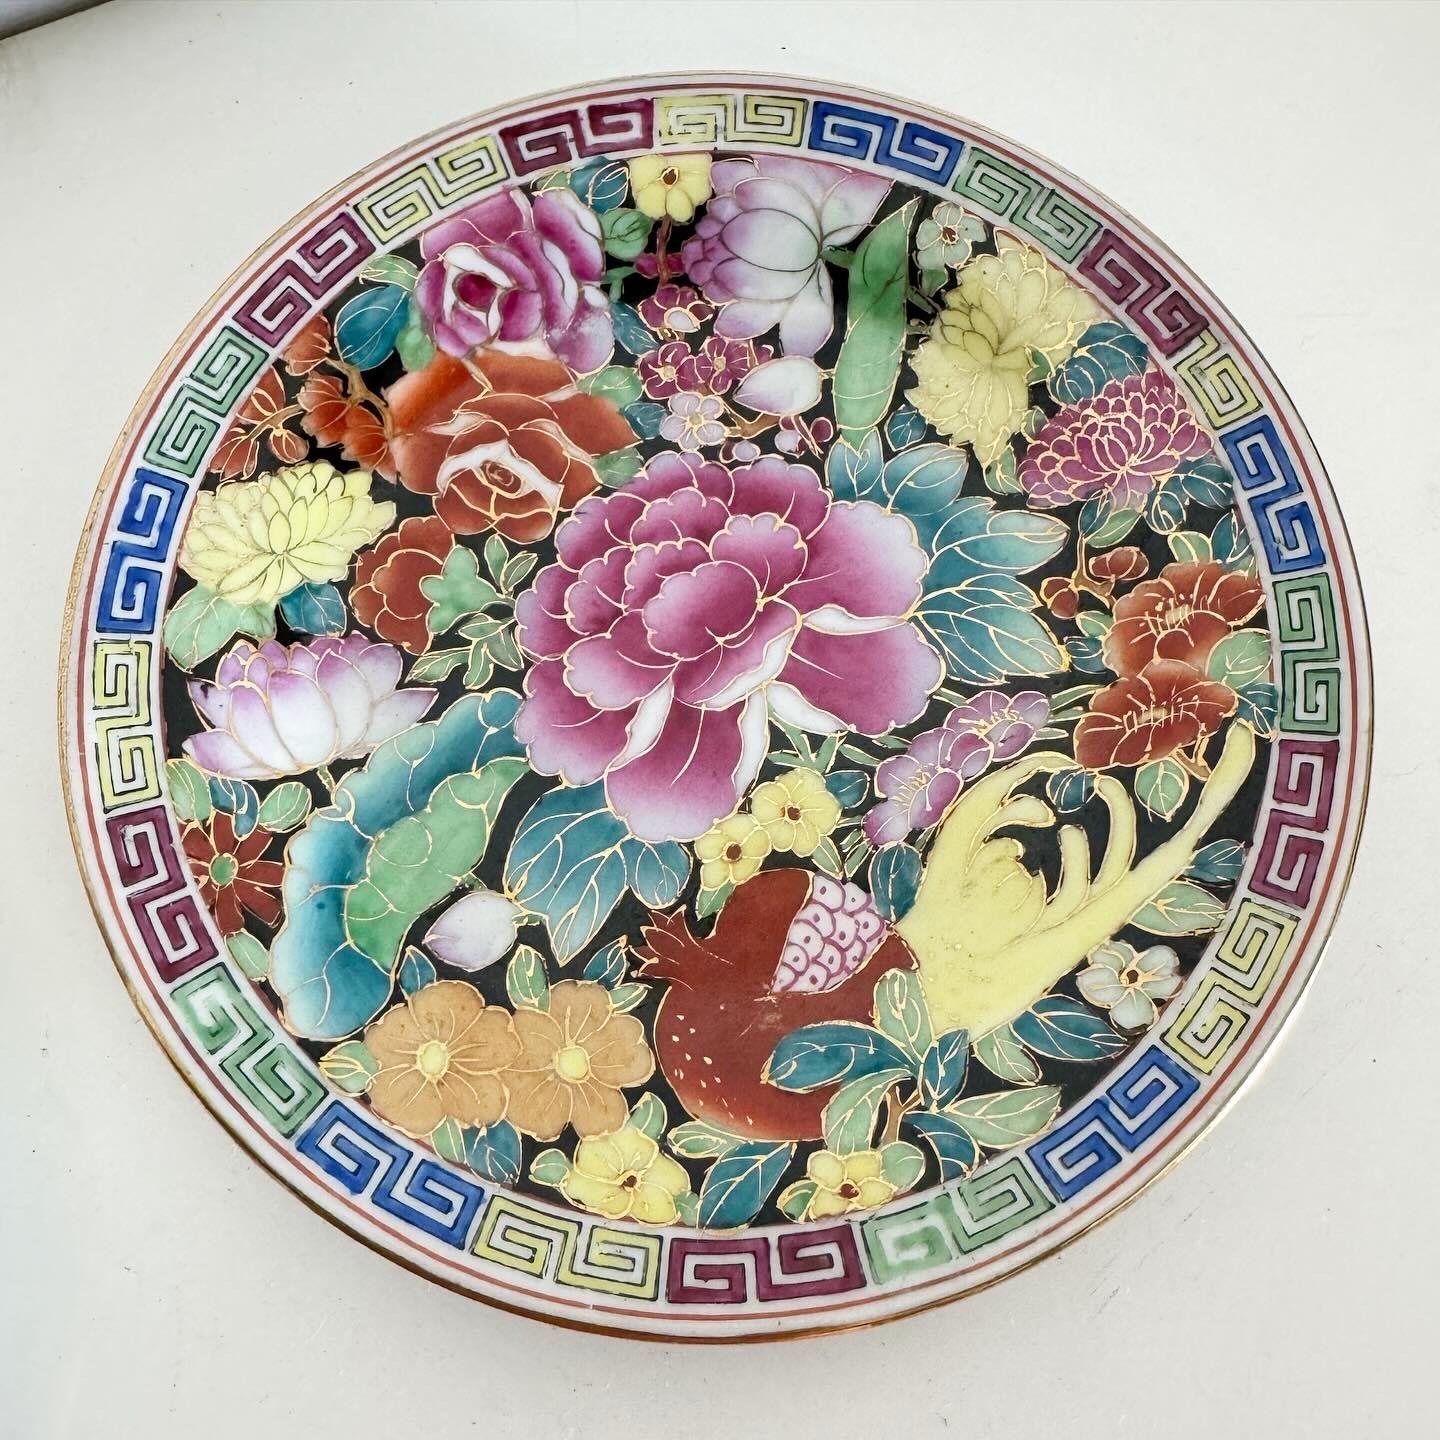 Embrassez l'art des assiettes vintage en porcelaine chinoise peinte à la main, une paire qui apporte à votre collection le riche héritage culturel et l'élégance intemporelle de la porcelaine chinoise traditionnelle. Chaque assiette présente des